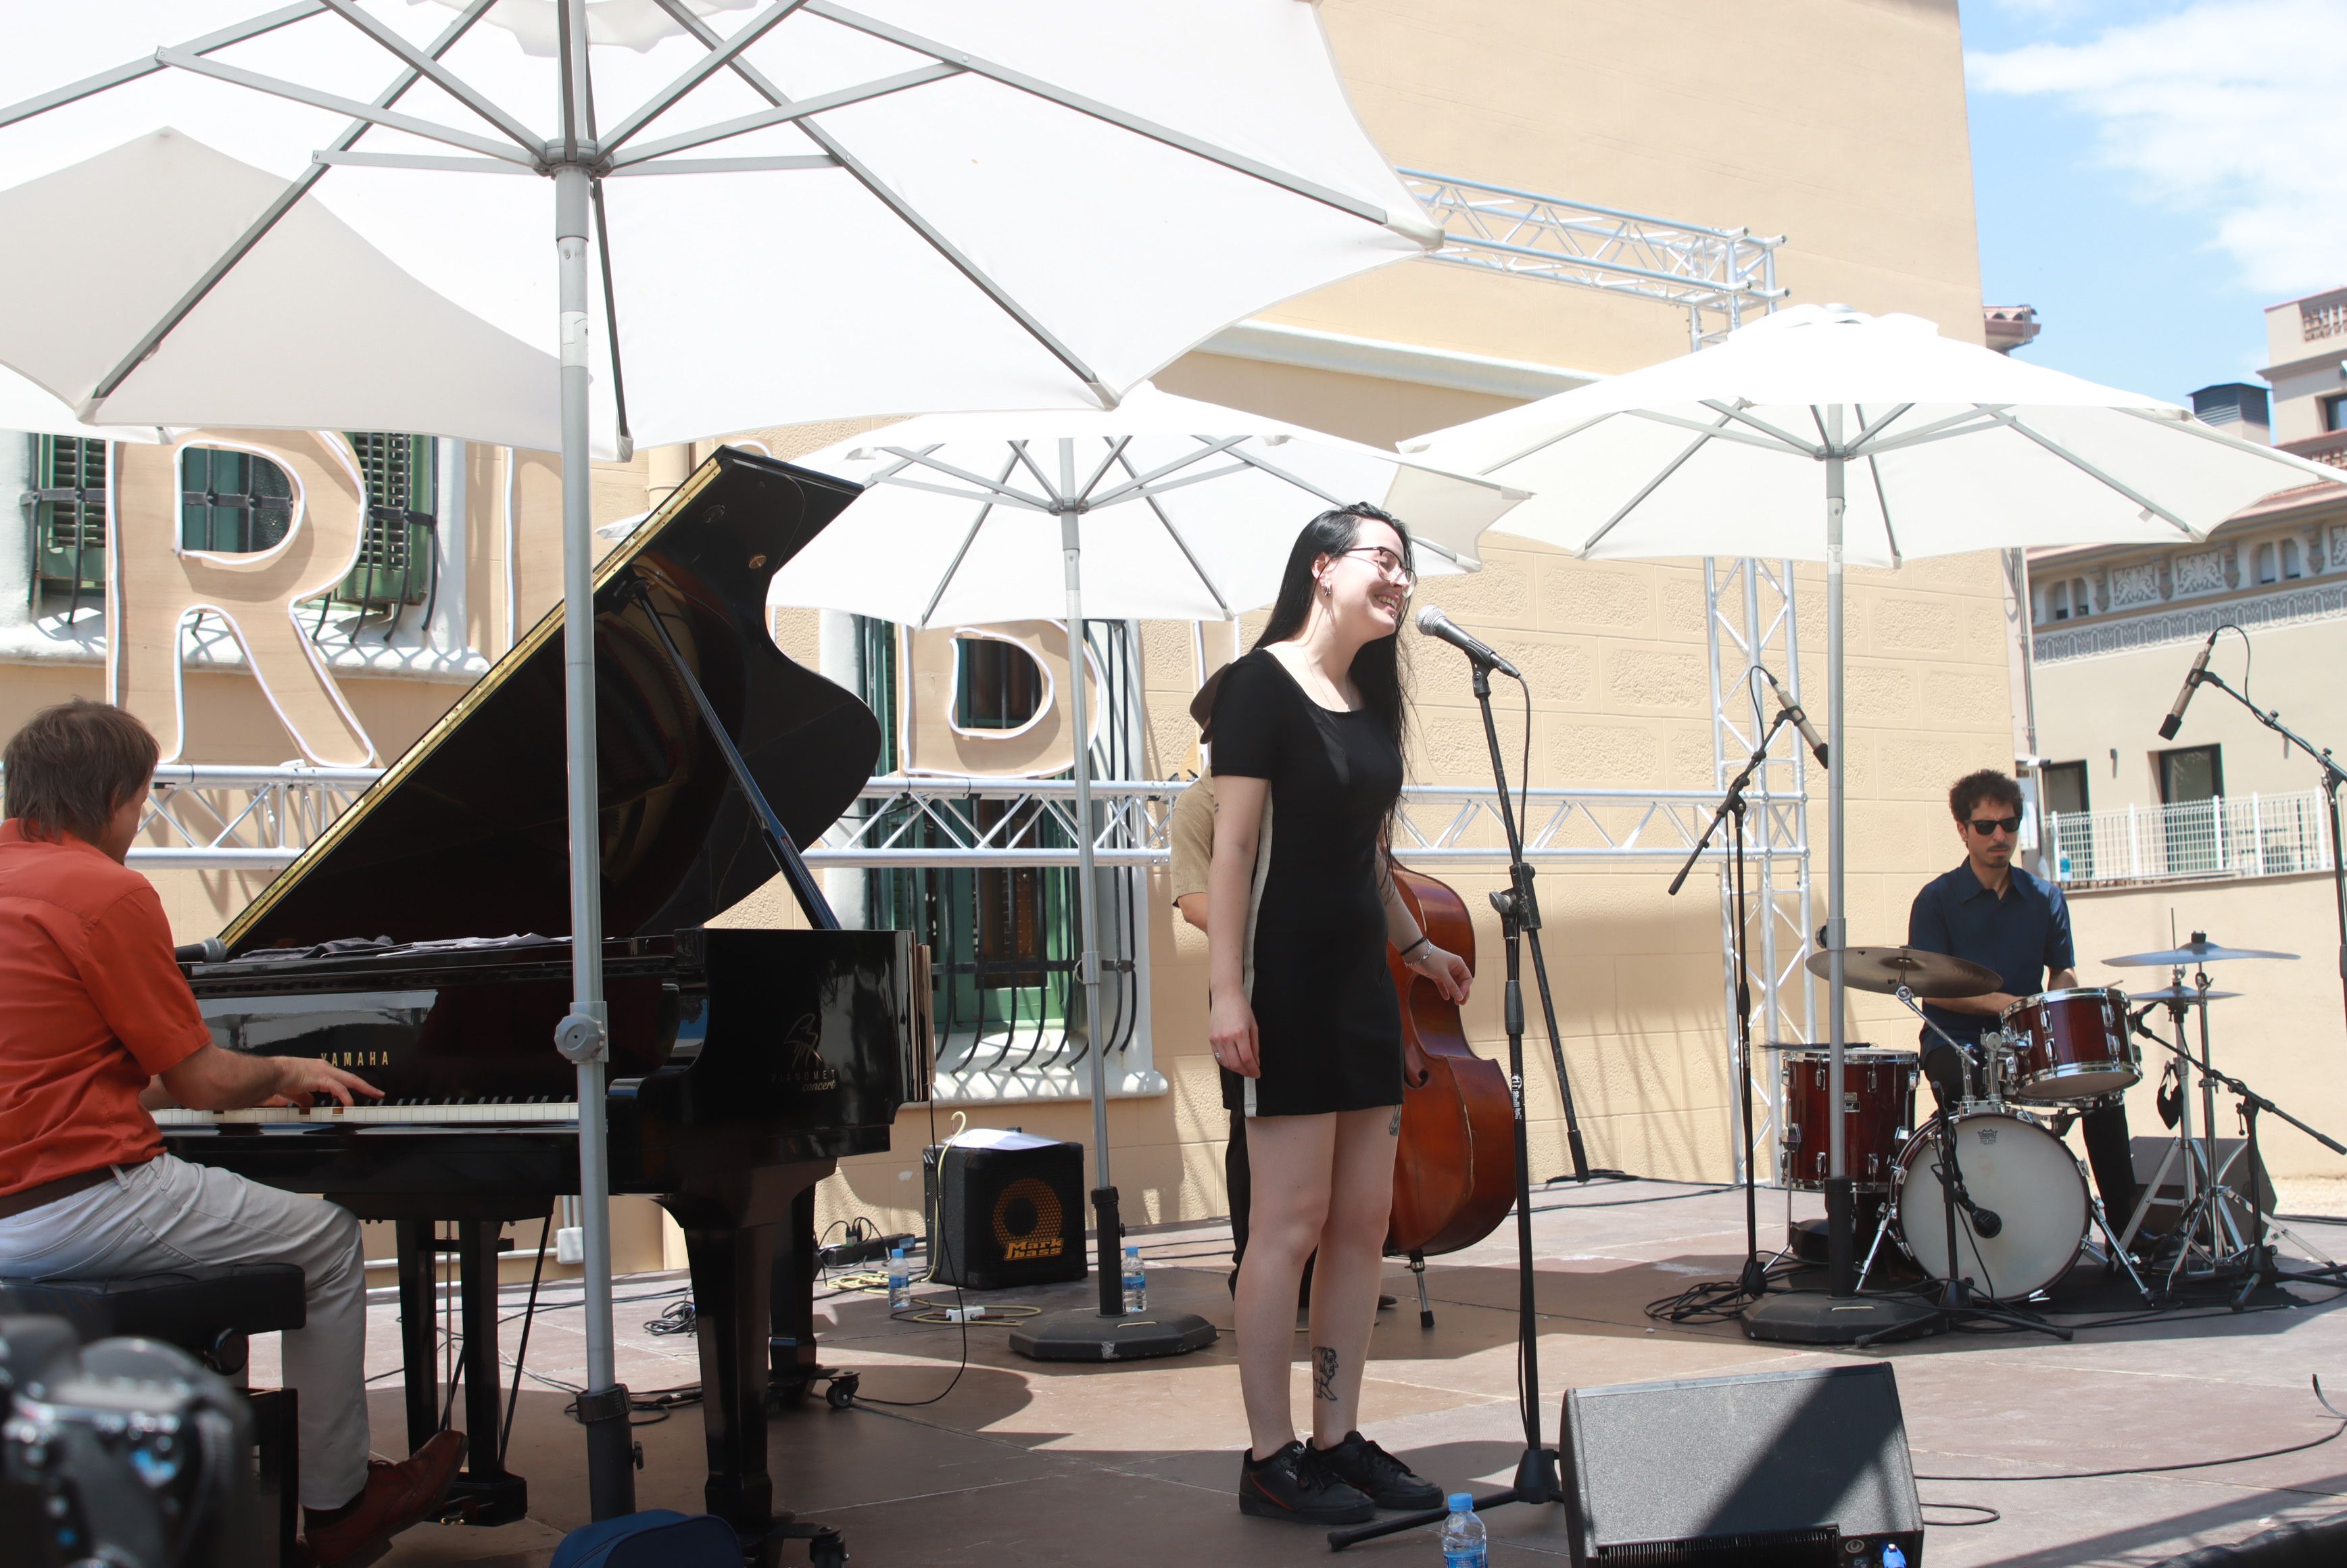 Actuacions musicals als jardins de l'Ateneu per Festa Major. FOTO: Josep Llamas